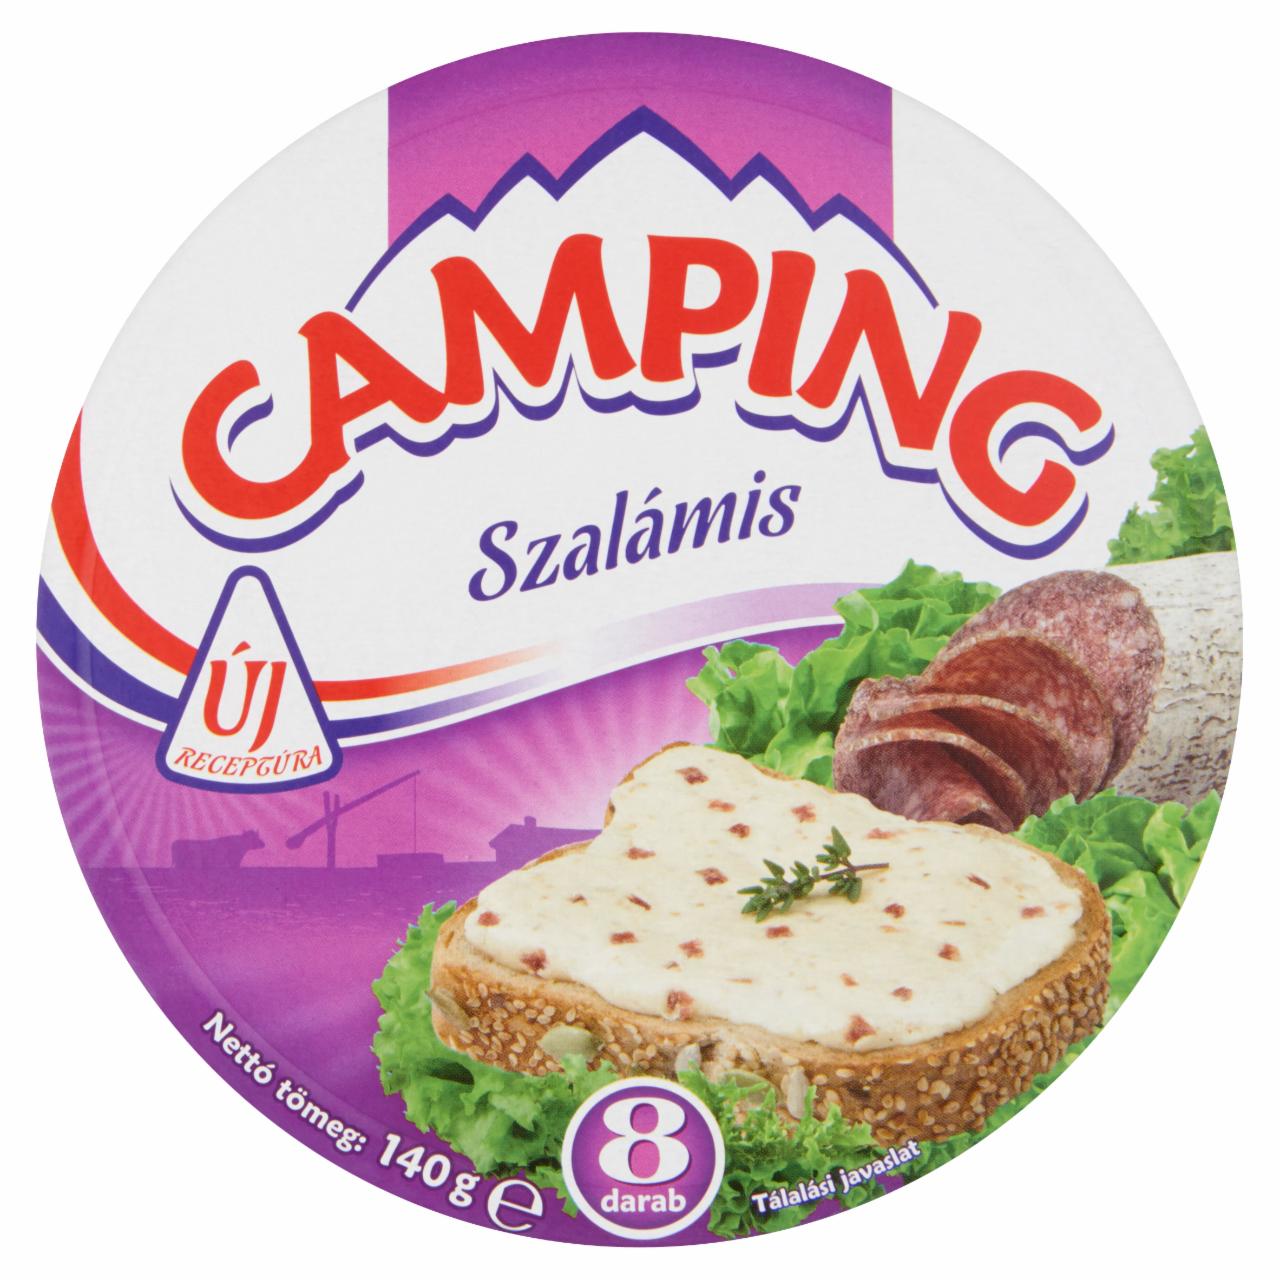 Képek - Camping szalámis kenhető, zsírdús ömlesztett sajt 8 db 140 g